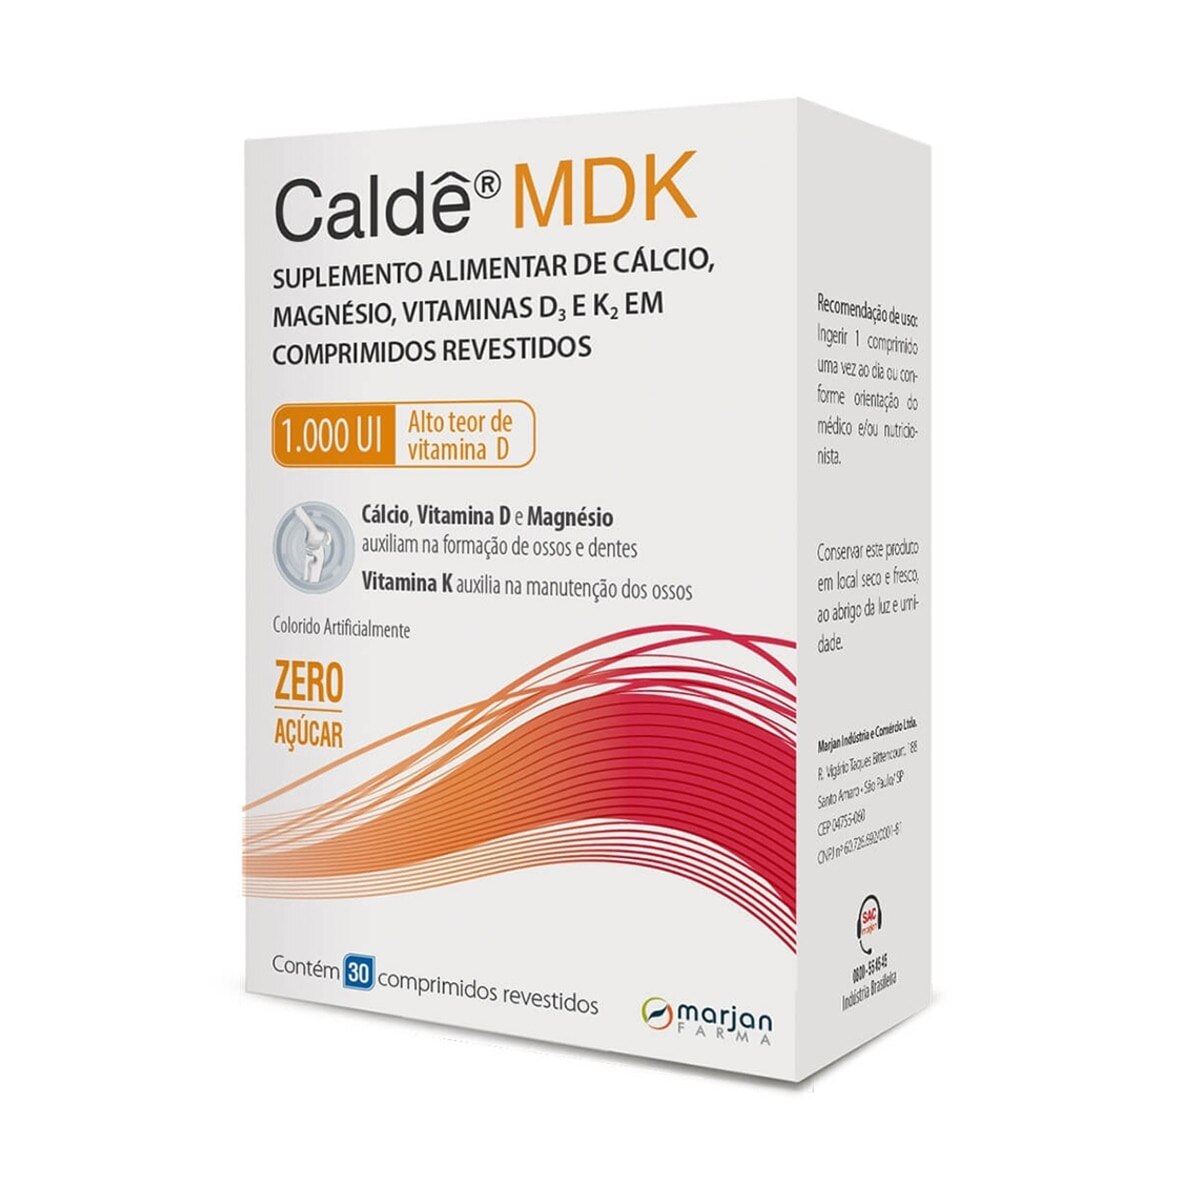 Calde MDK 1.000UI 30 Comprimidos Revestidos